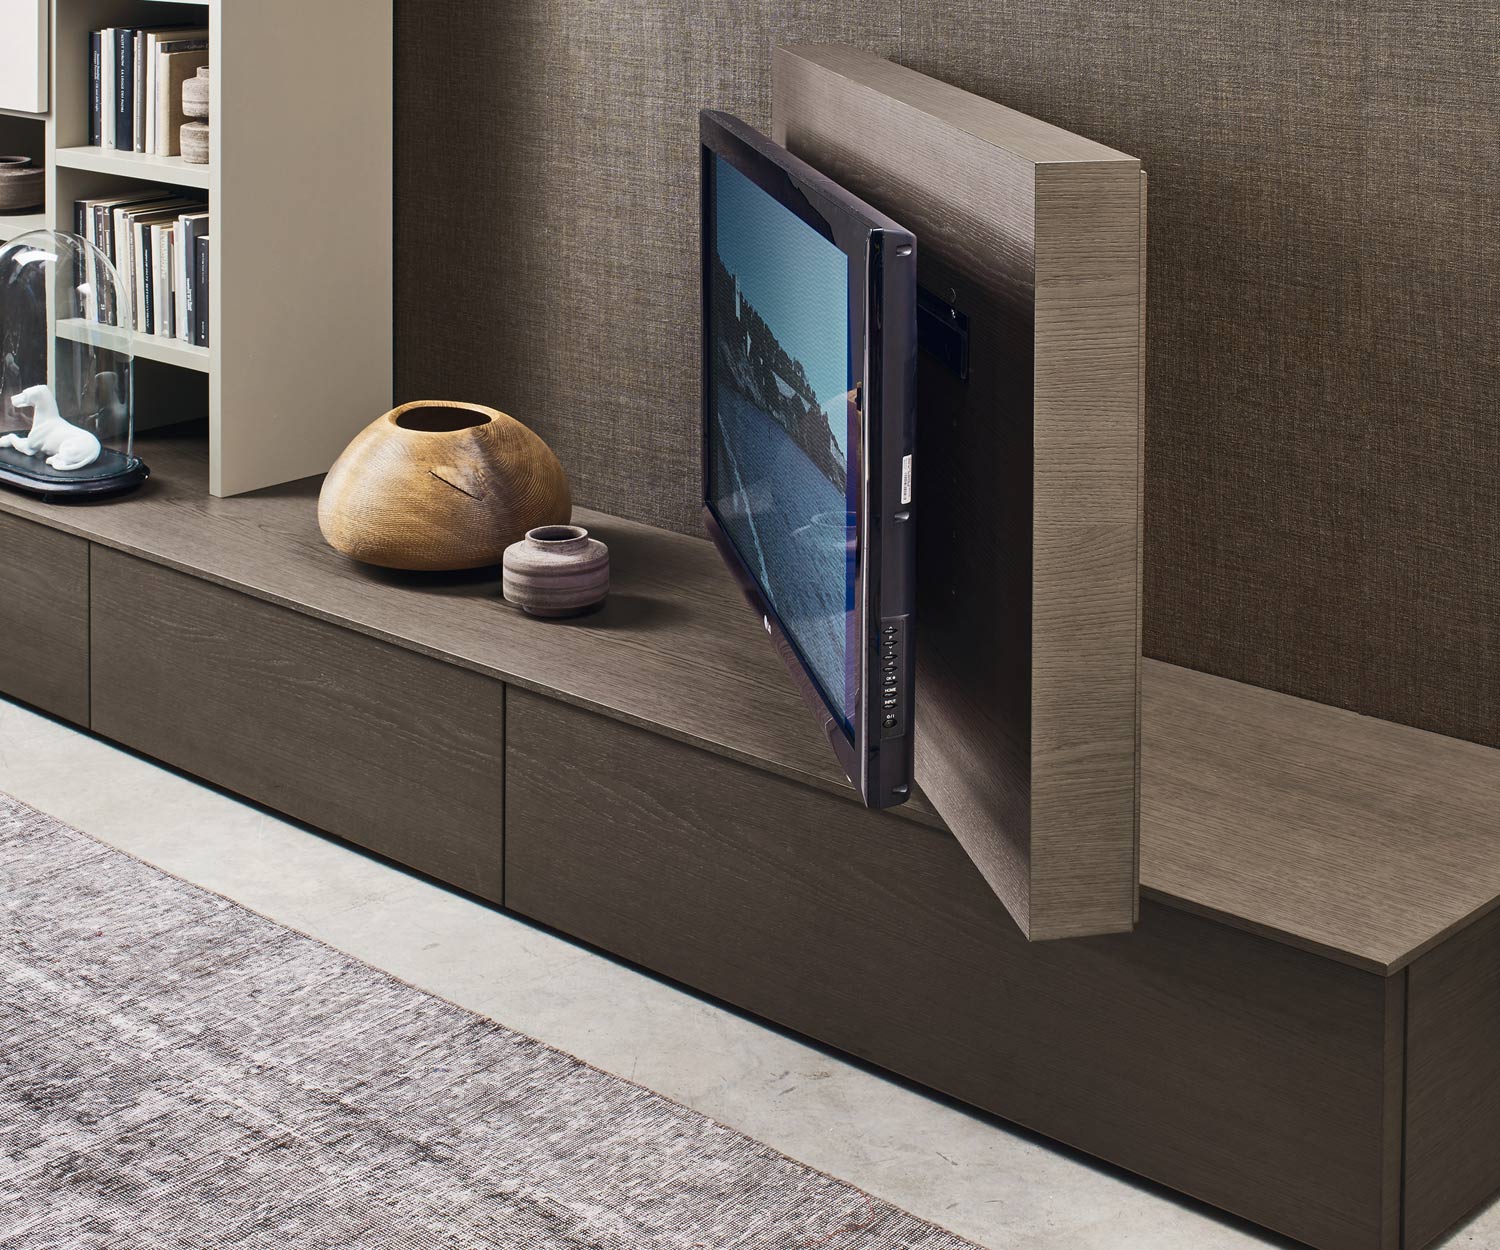 Esclusivo design Livitalia Vision con pannello TV orientabile a 90°.